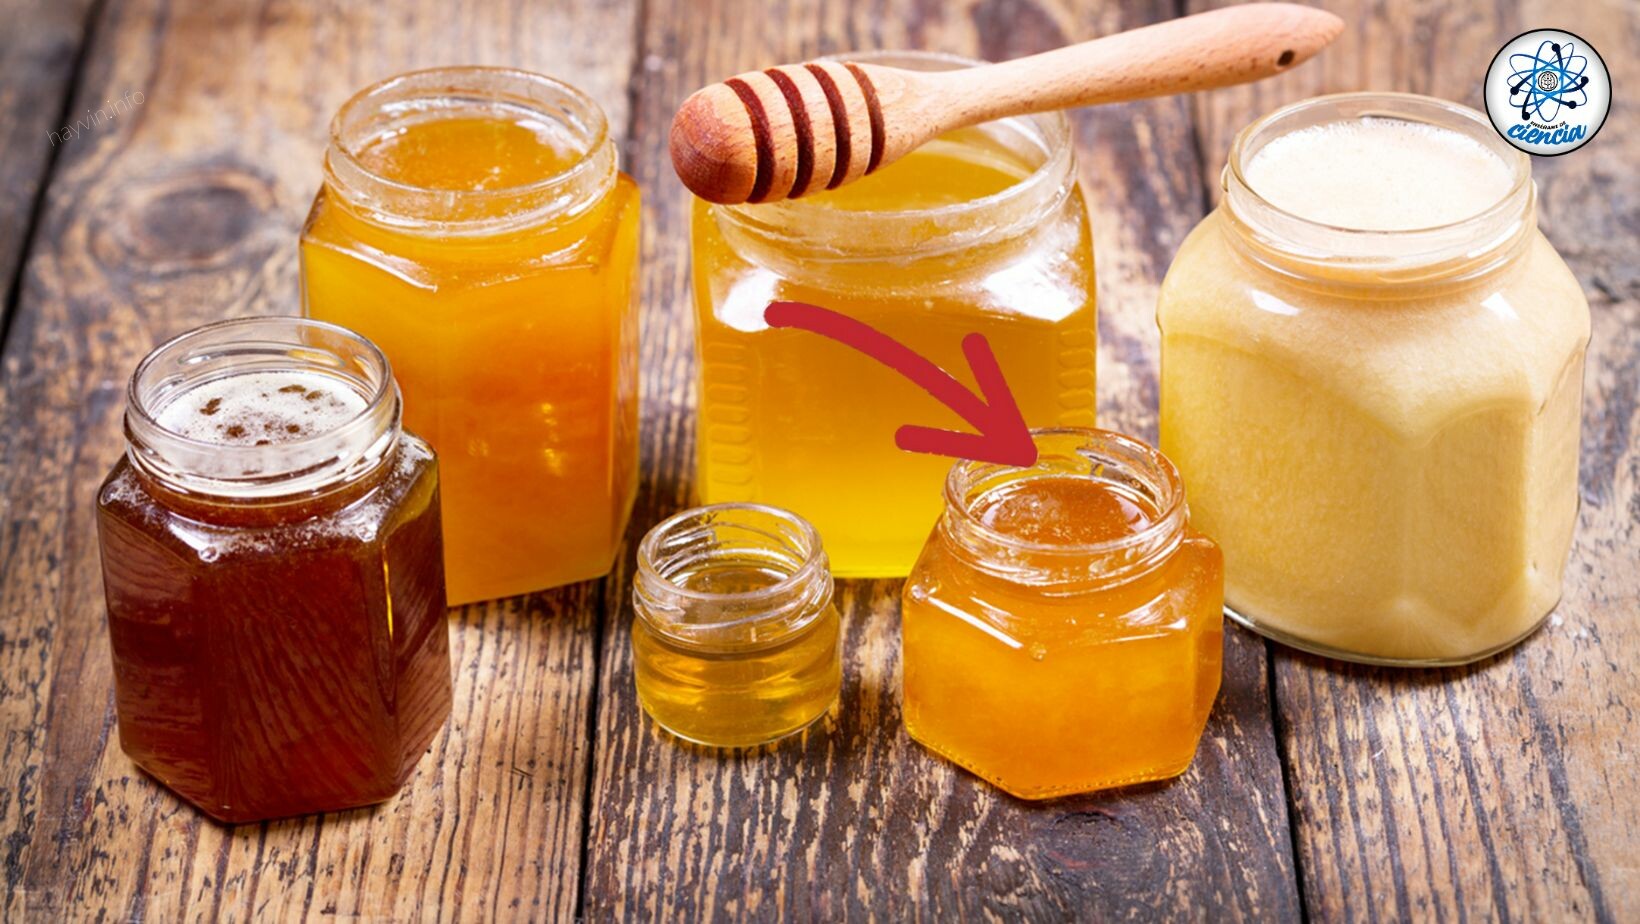 Így lehet megkülönböztetni a hamisítványokat méz az eredetitől, és ne veszélyeztesse egészségét